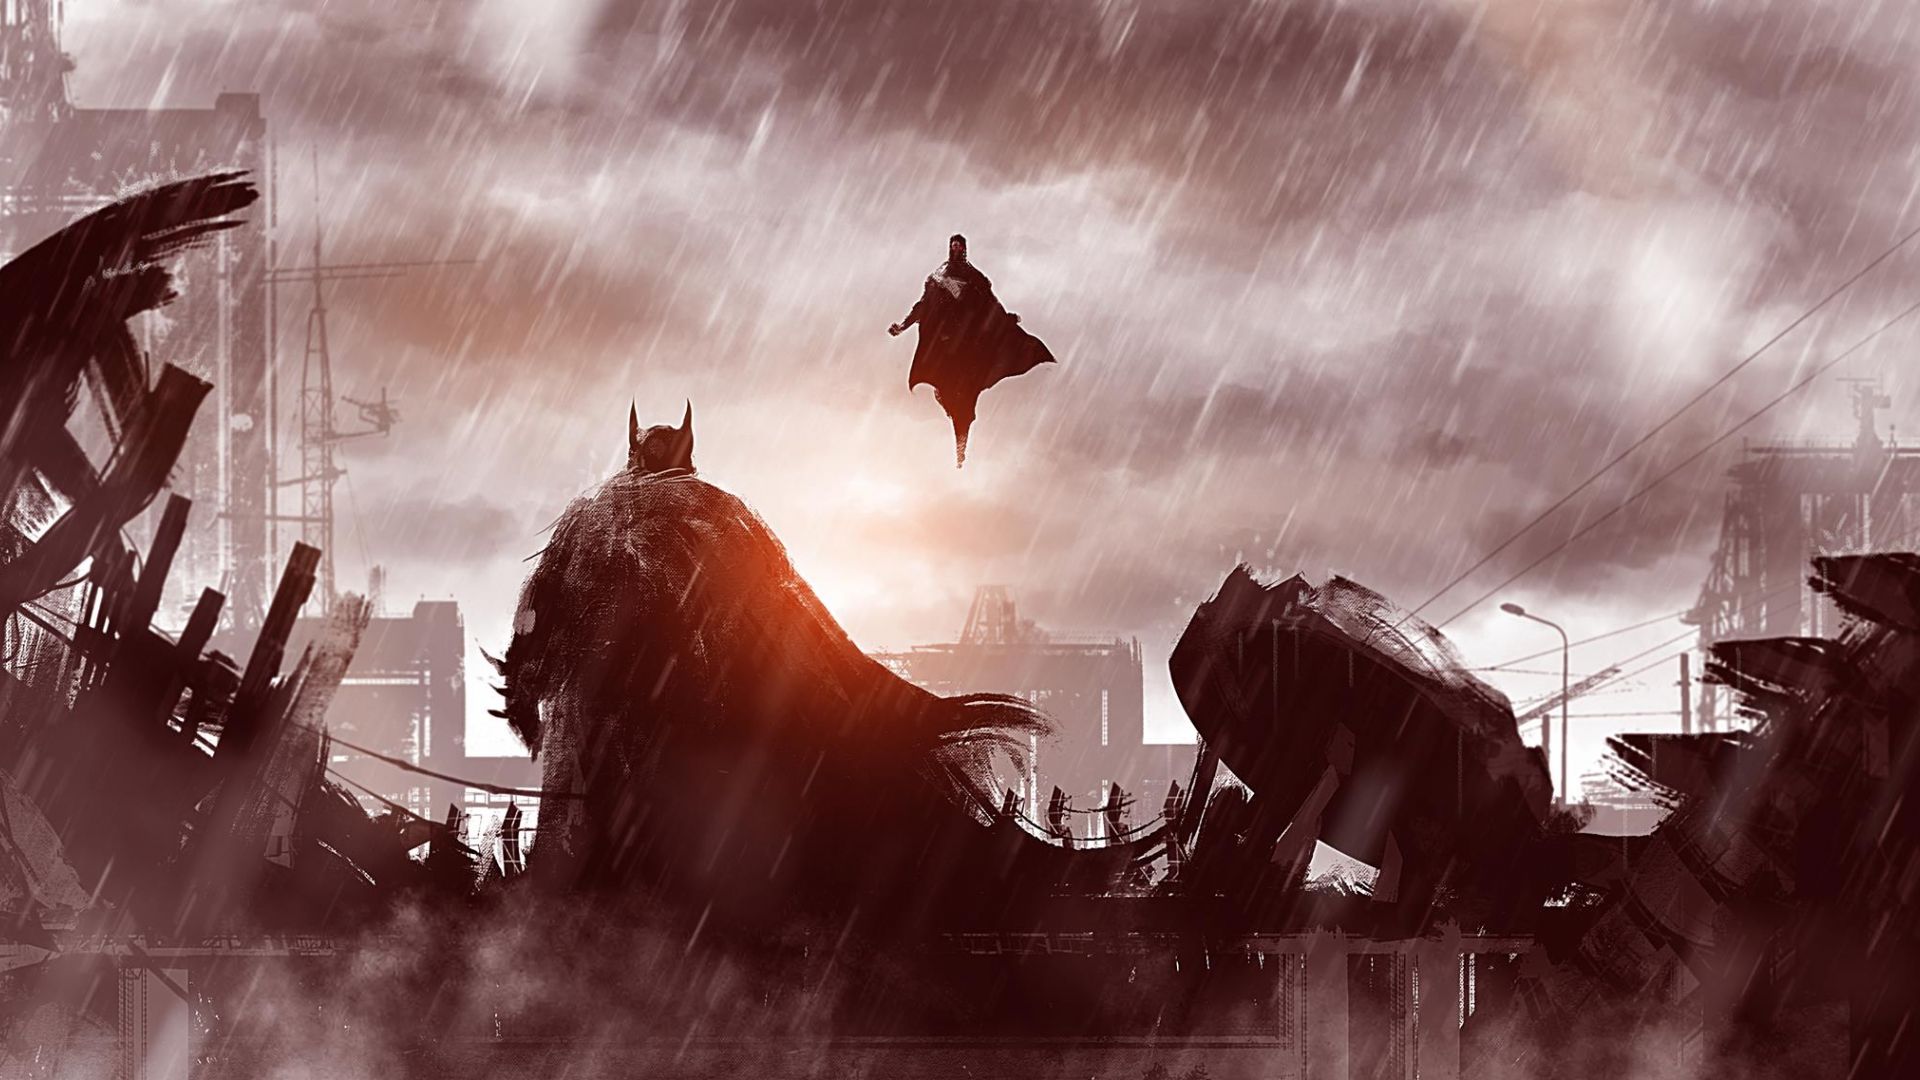 Wallpaper Batman vs superman artwork